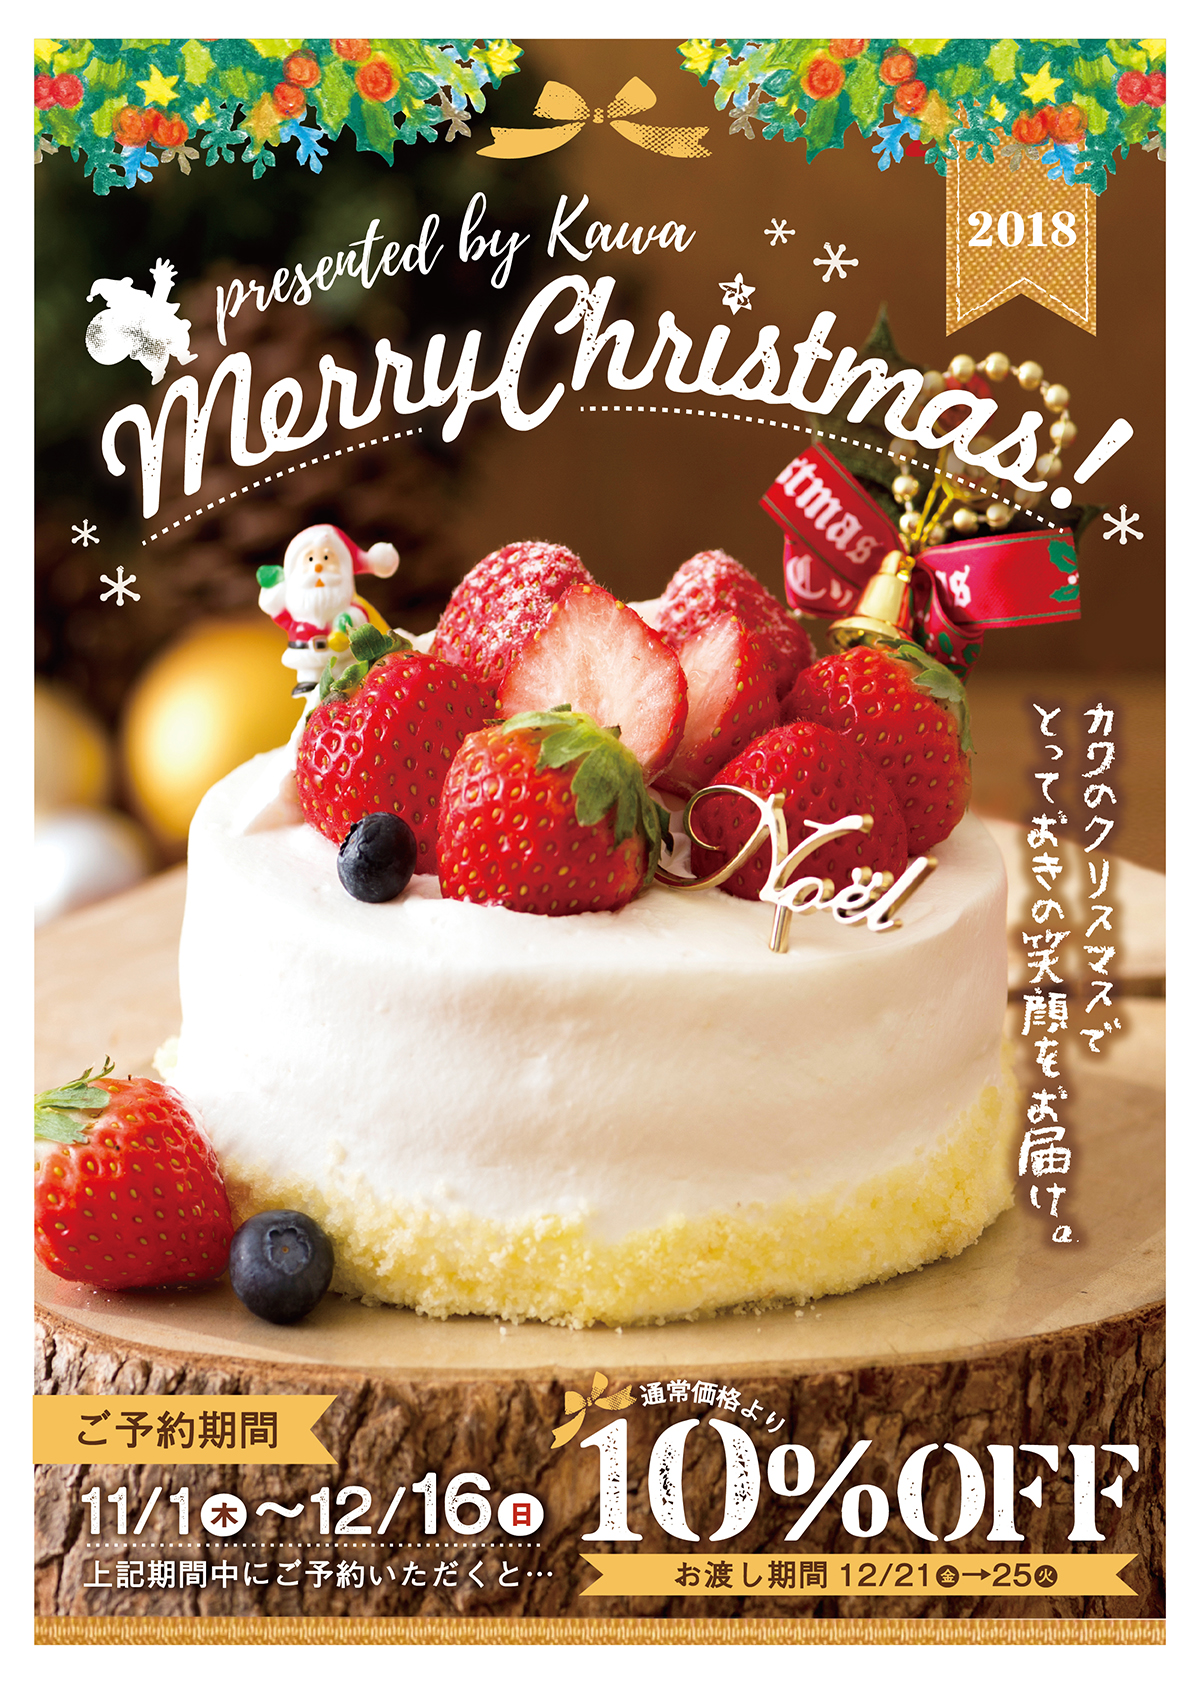 2018 カワのクリスマスケーキ12月25日 火 までのお受け取り3日前までのご予約は終了致しました パン工房カワ